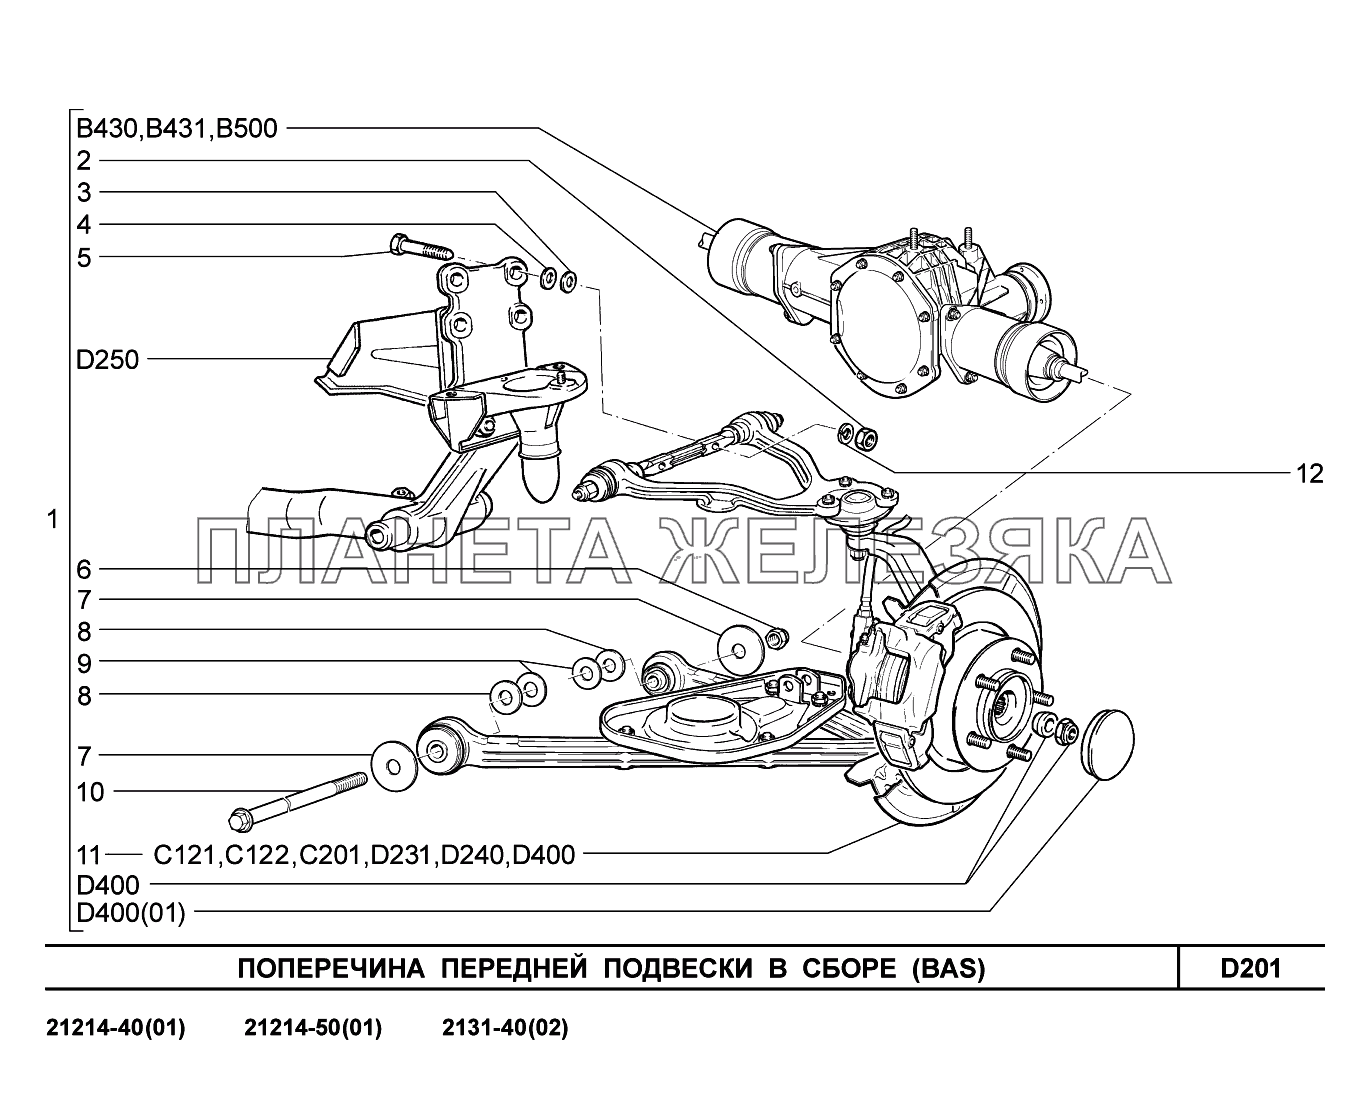 D201. Поперечина передней подвески в сборе LADA 4x4